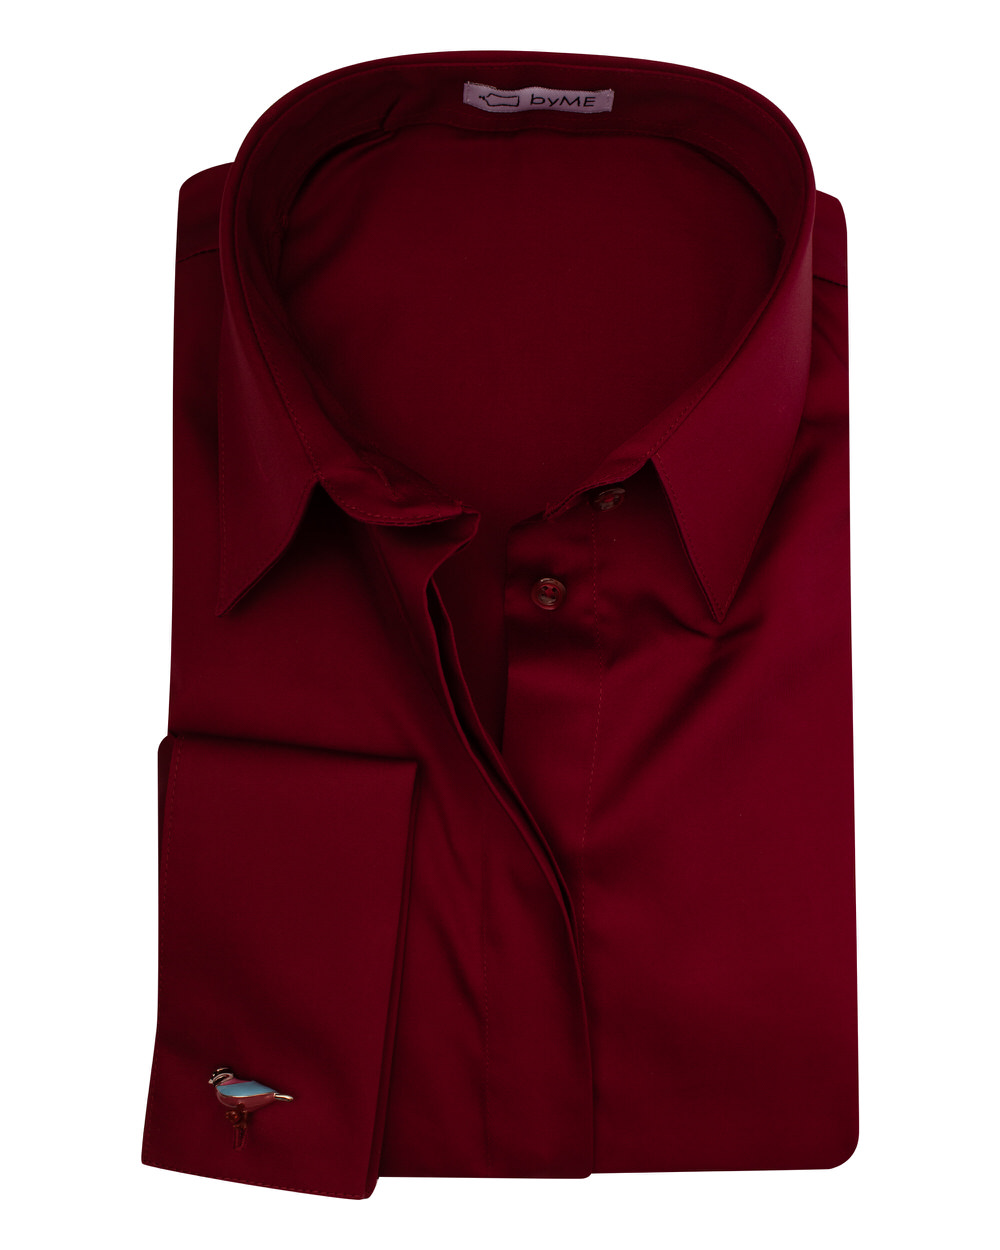 Женская рубашка под запонку приталенная с супатной застежкой без отделки вишневая - 8131 от byME 